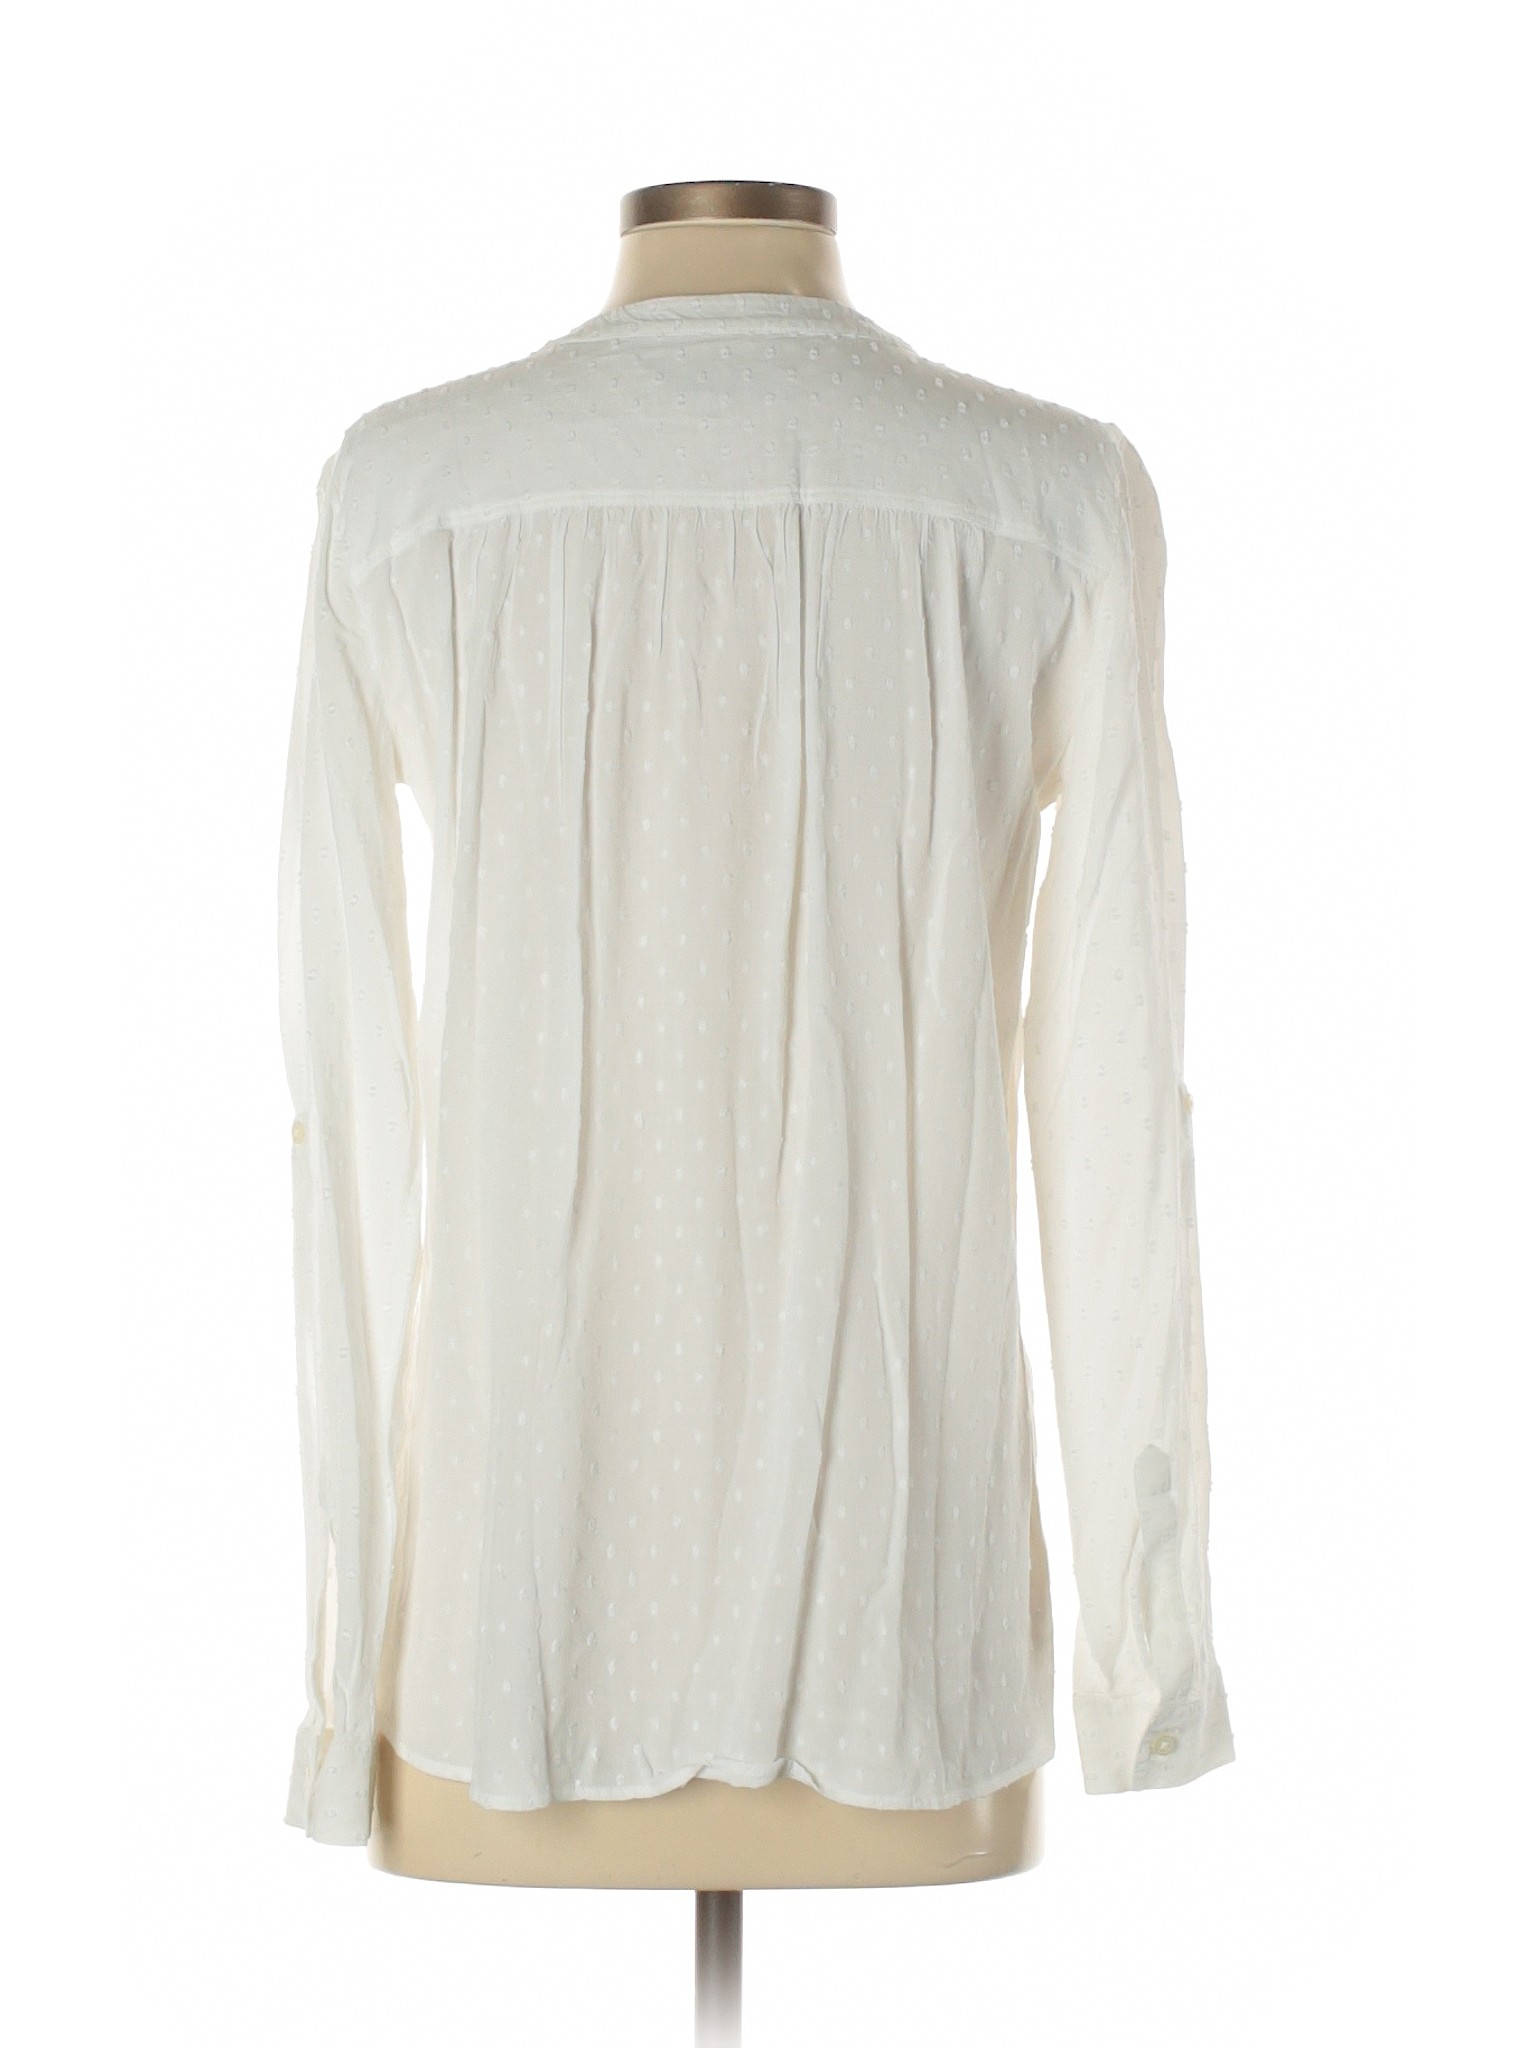 Ann Taylor LOFT Women White Long Sleeve Blouse XS | eBay